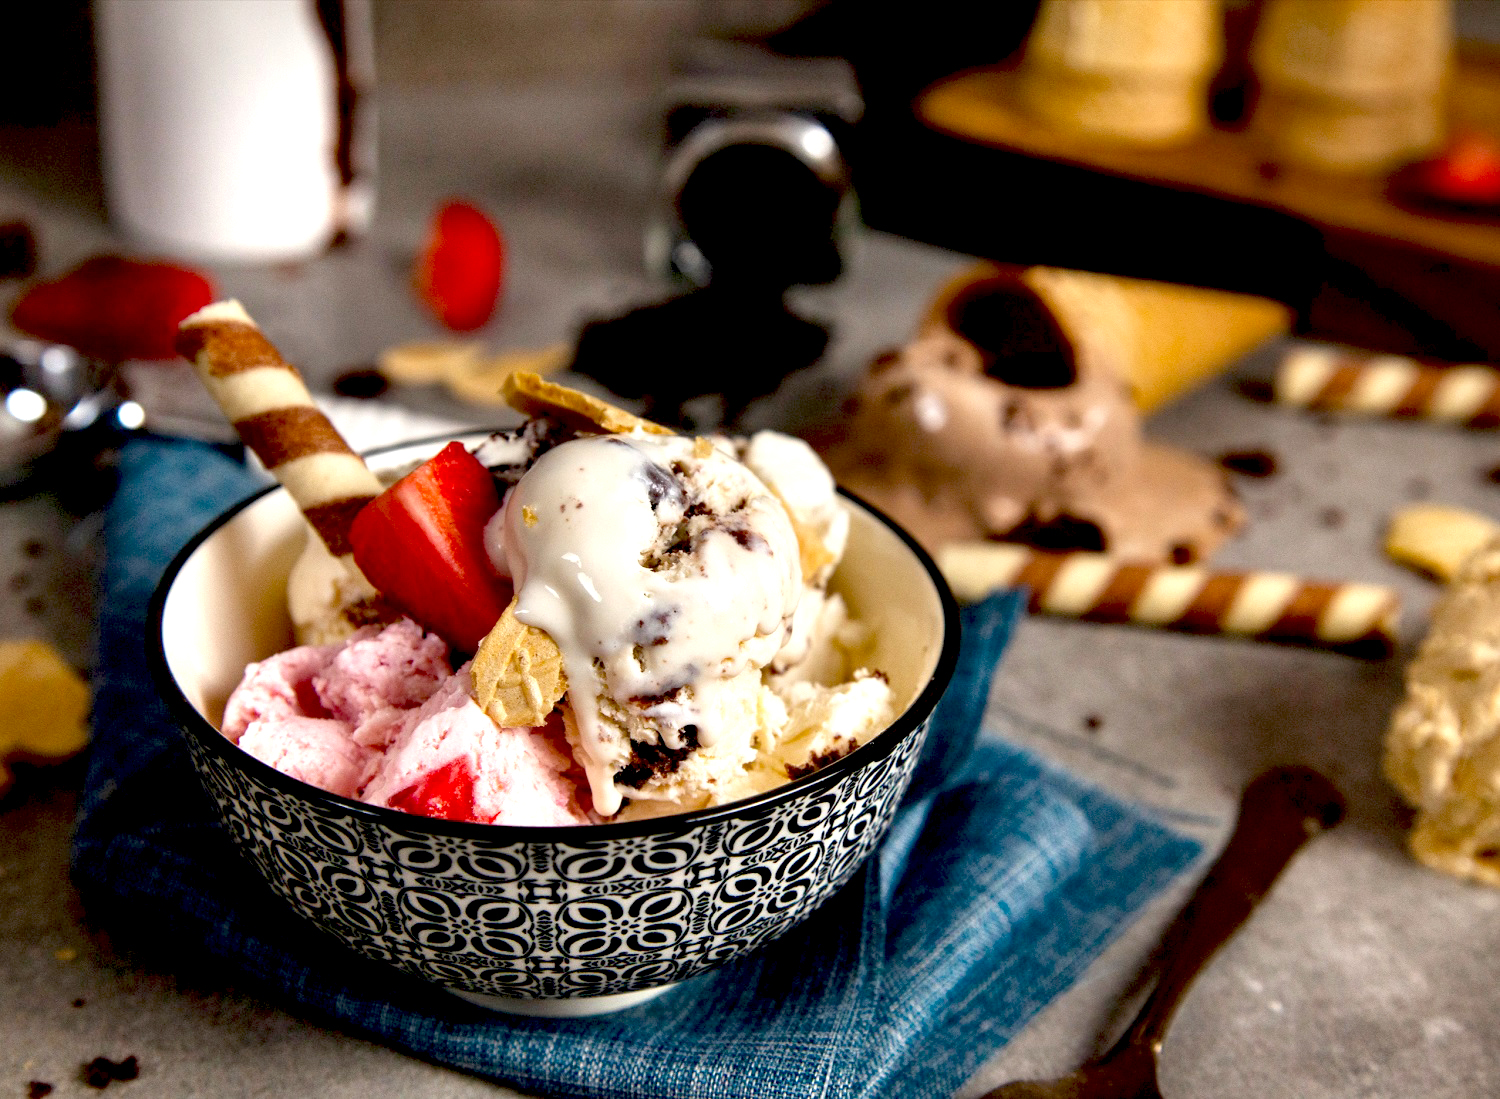 Μπολ σε λευκό και μαύρο χρώμα, επάνω σε τραπέζι με τρούφες σοκολάτας και χωνάκια παγωτού, με σπιτικό παγωτό σε γεύσεις μπισκότο, φράουλα, σοκολάτα, φρέσκες φράουλες και μπισκότα από βανίλια και σοκολάτα, επάνω σε μπλε πετσέτα σερβιρίσματος, με μεταλλικό κουτάλι στο πλάι